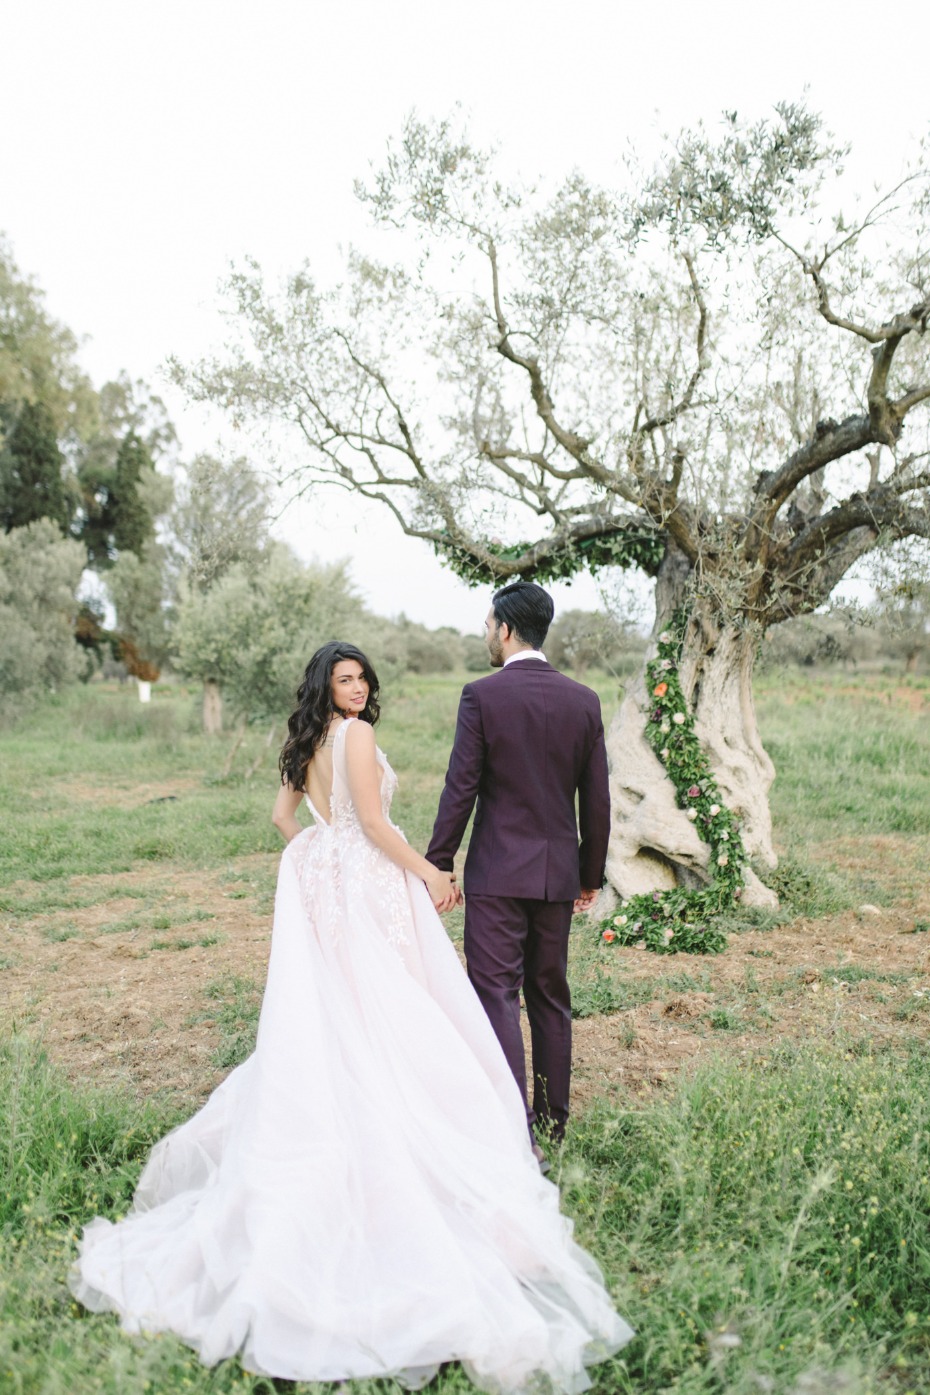 Blush wedding dress by Nathalie Karam